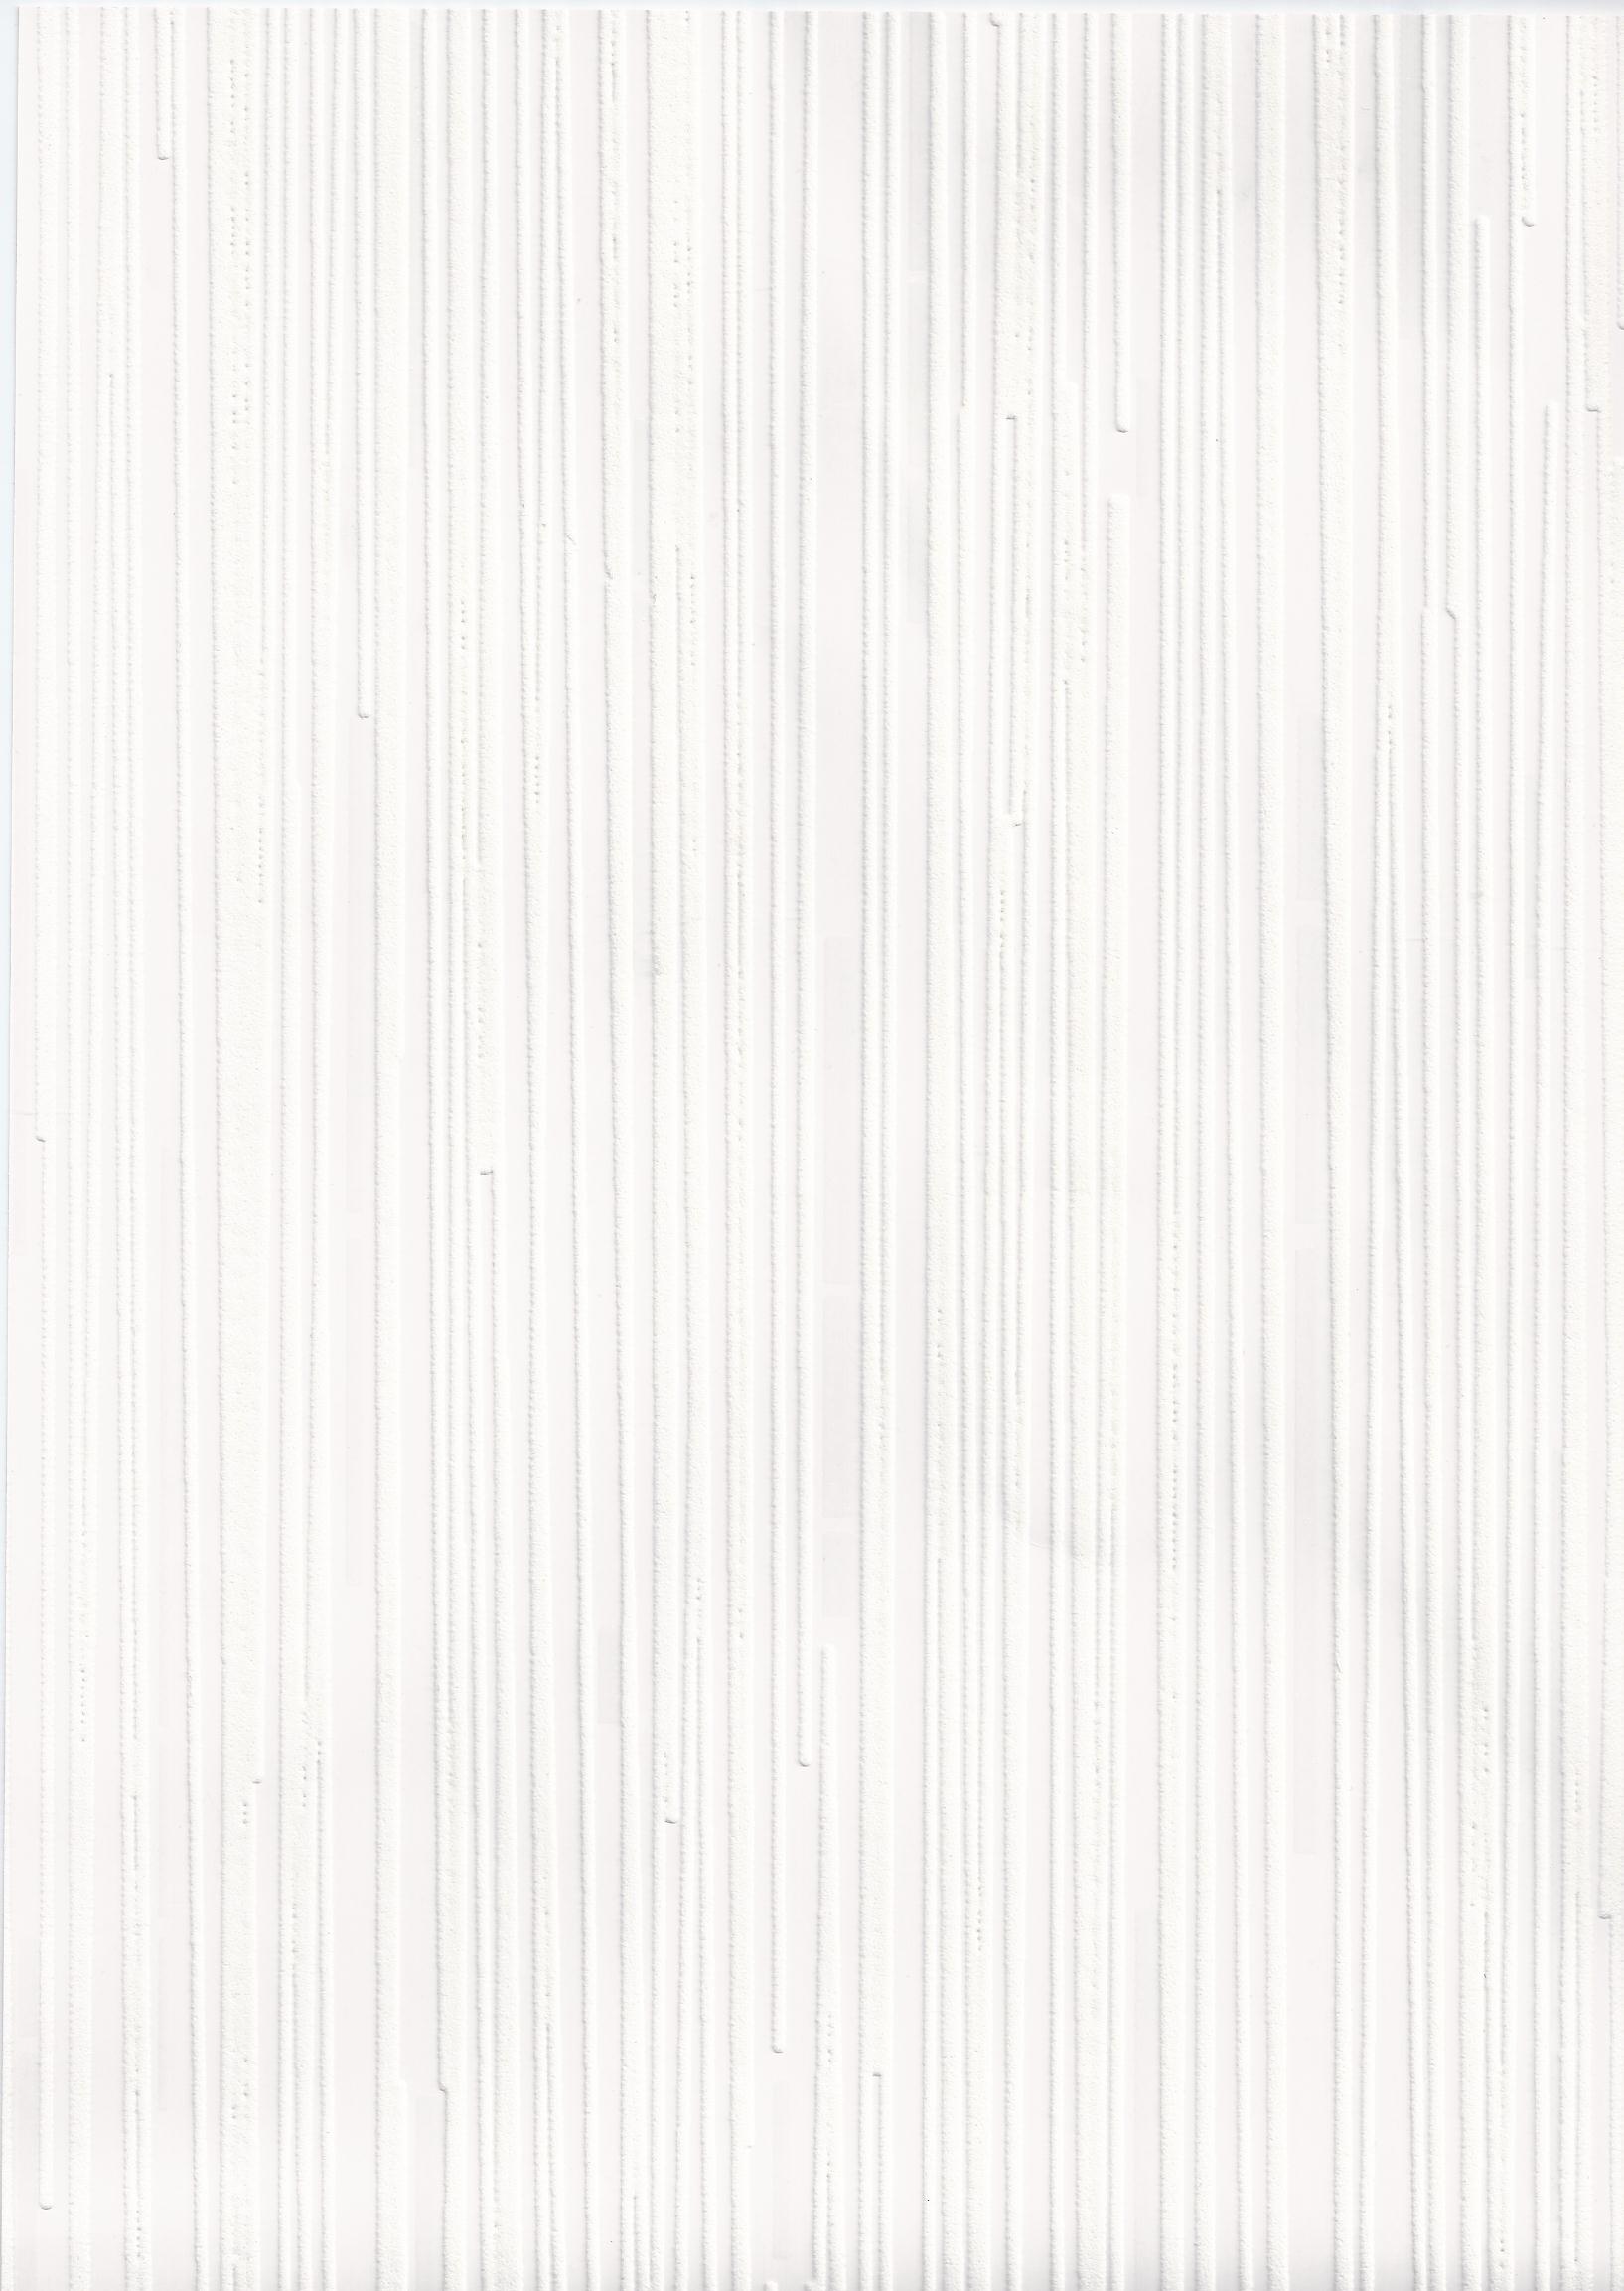 Share more than 142 plain white wallpaper super hot - xkldase.edu.vn